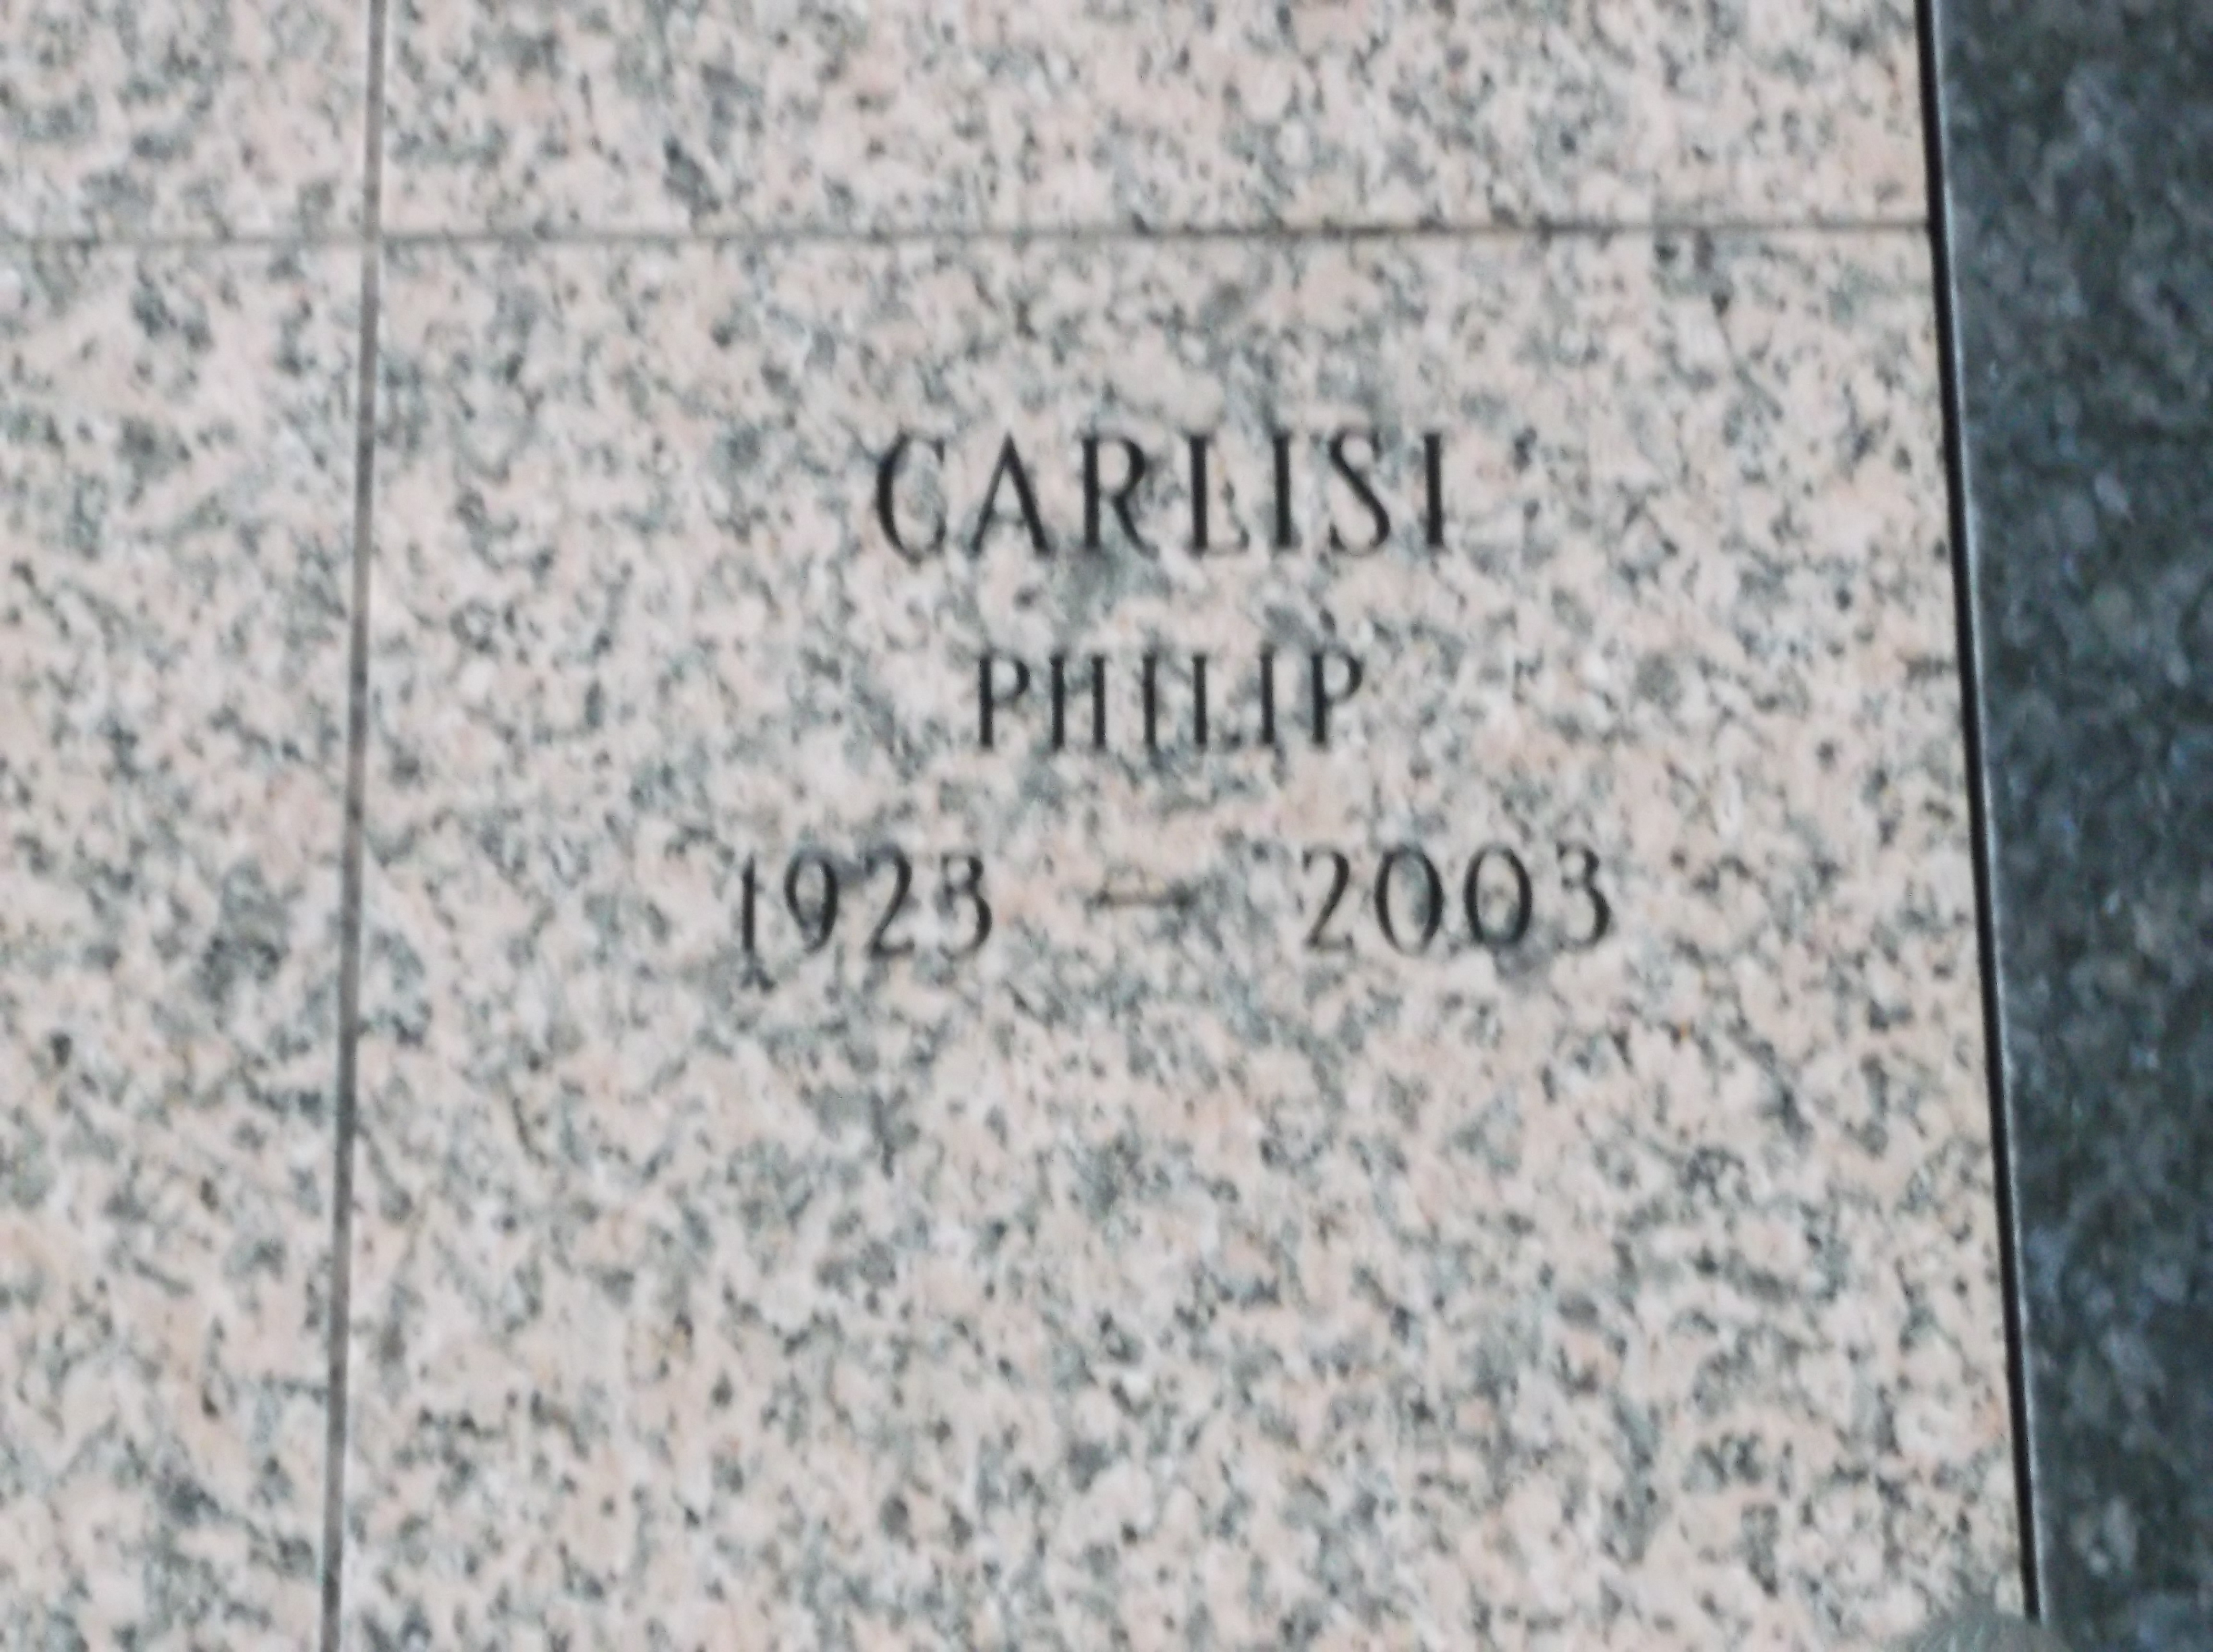 Philip Carlisi